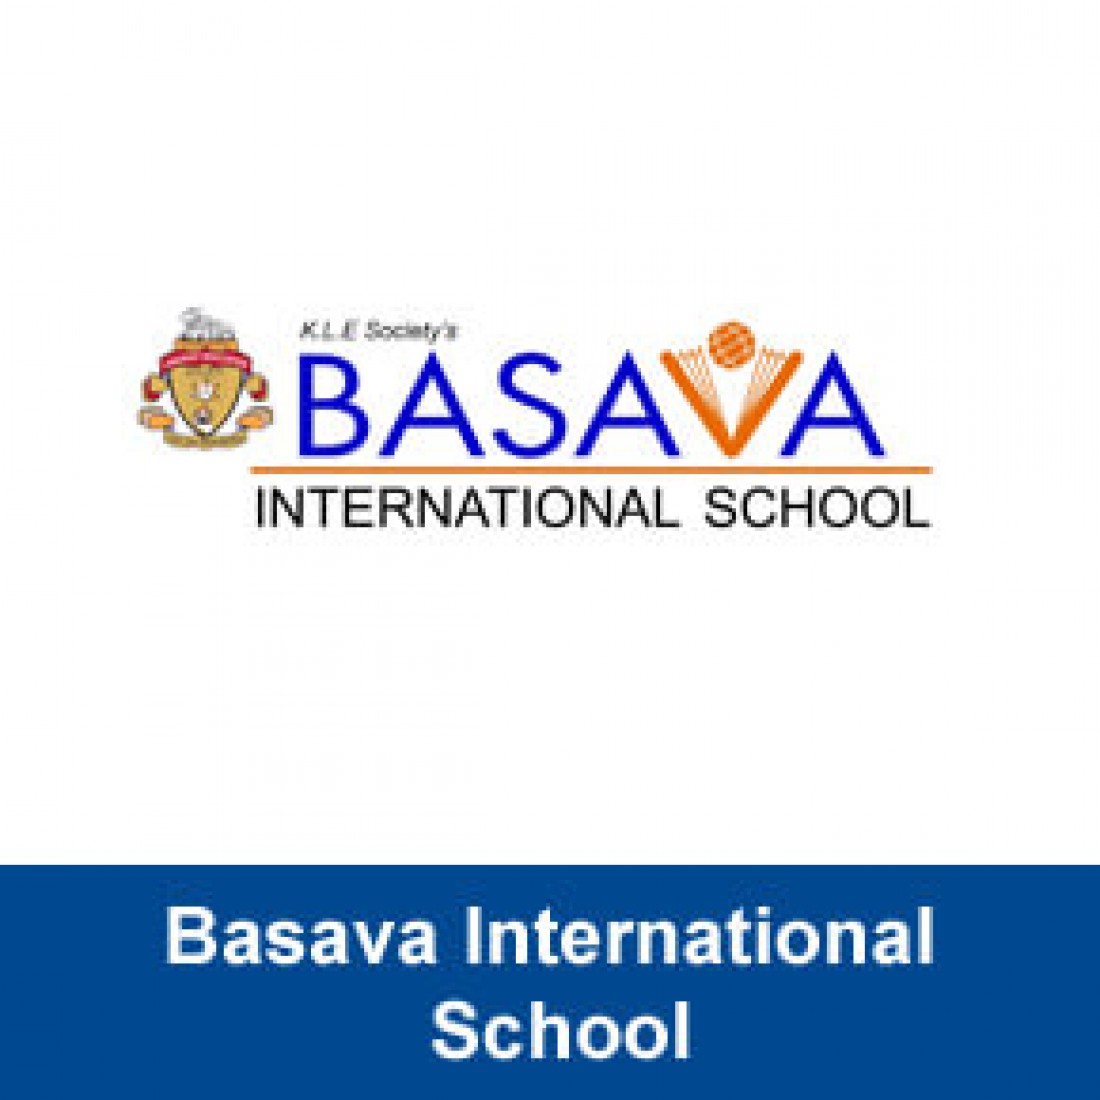 Basava International School|Schools|Education